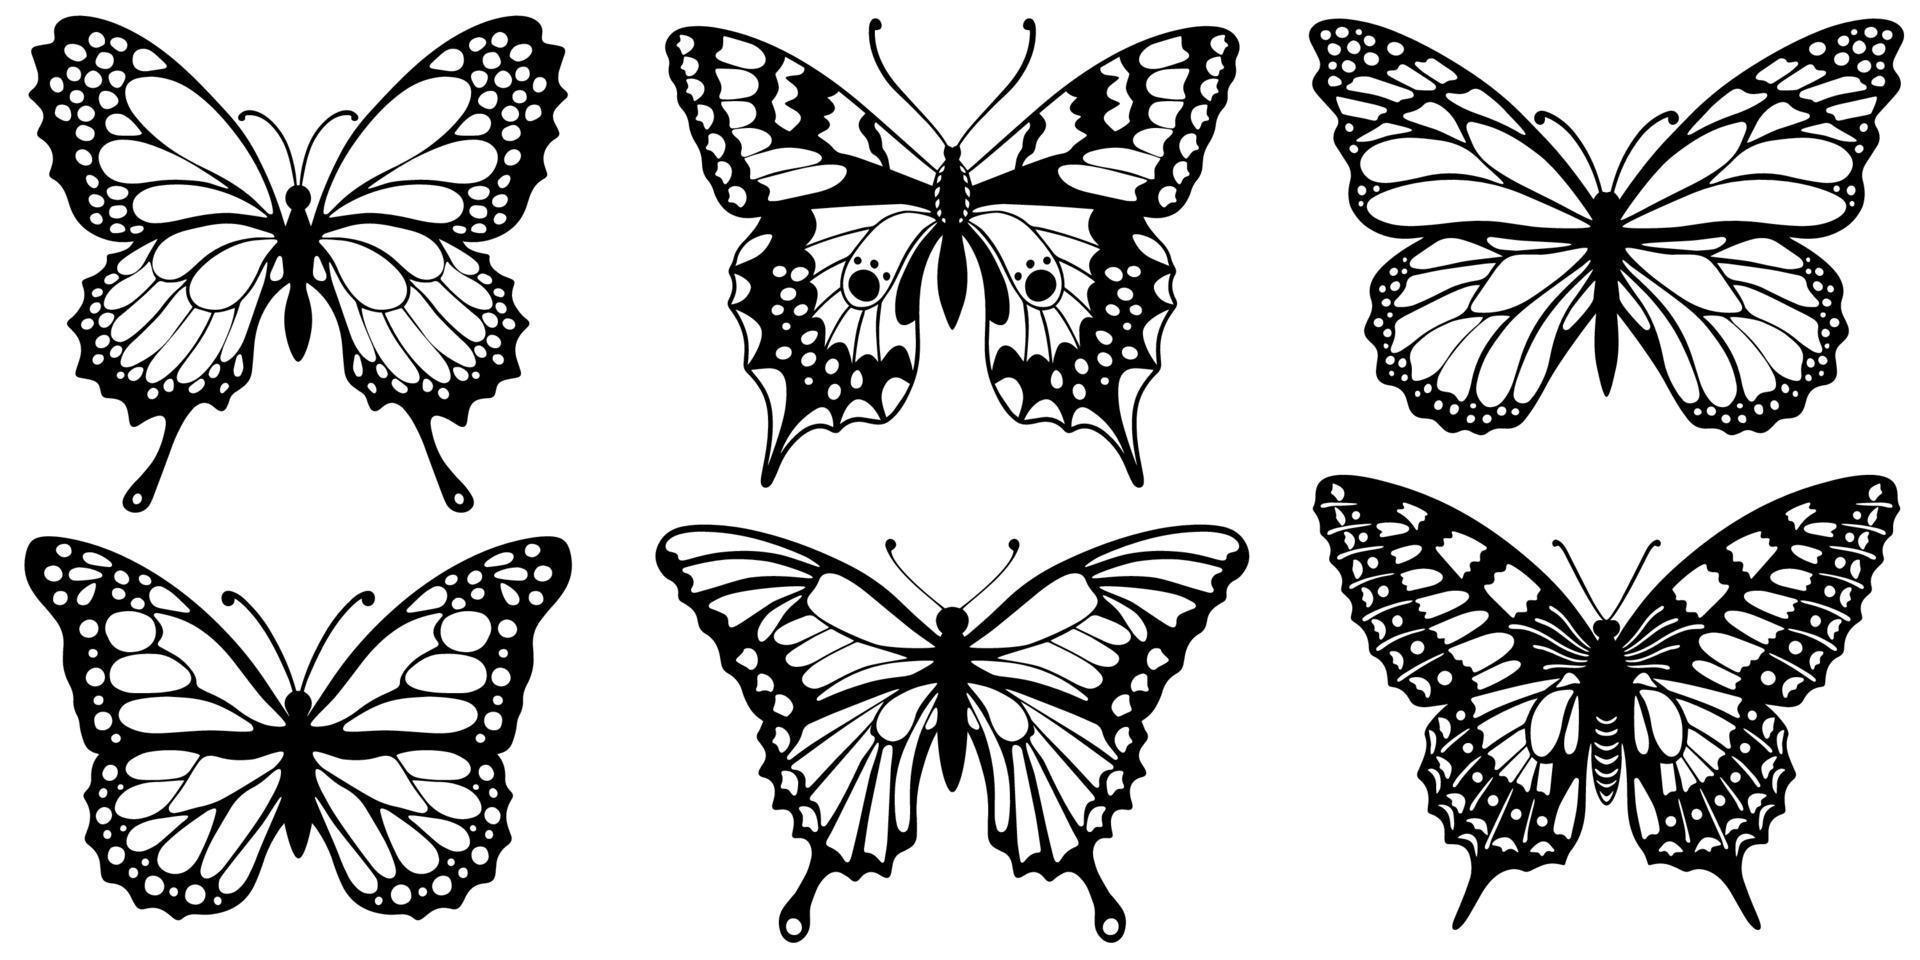 zwarte silhouetten van vlinders tekenen op een witte achtergrond vector